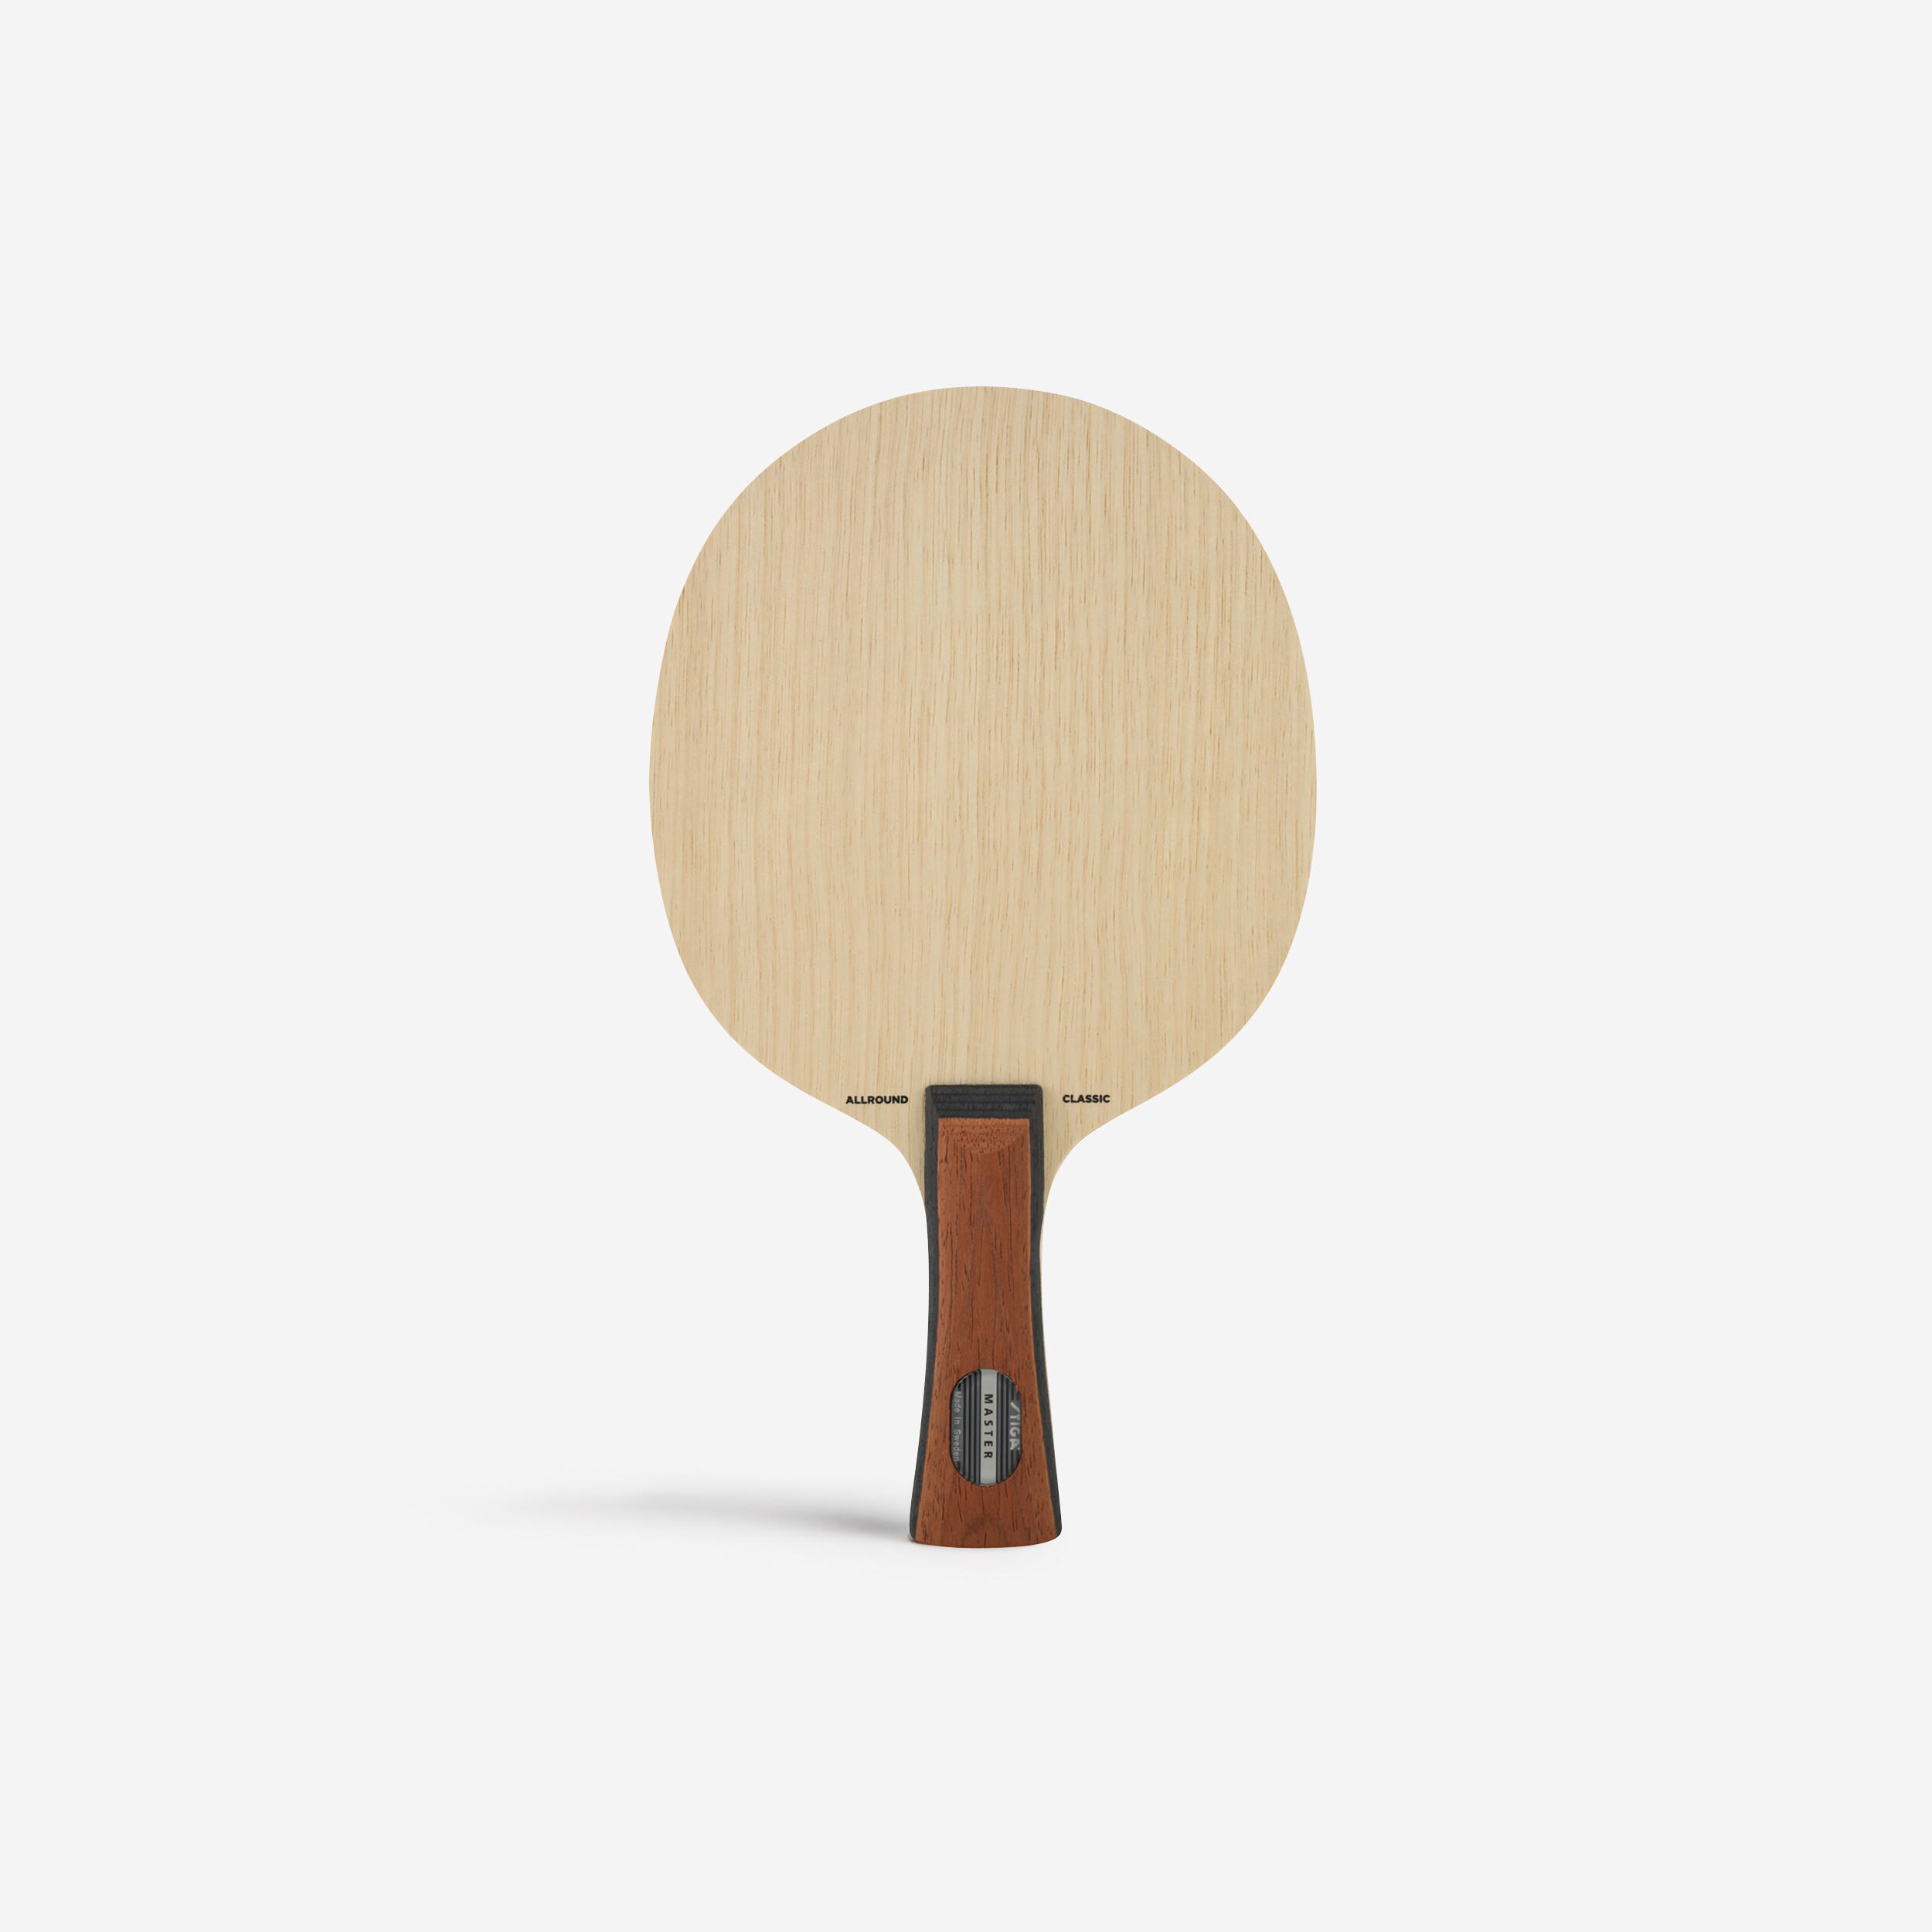 Structură lemn paletă tenis de masă ALLROUND CLASSIC Accesorii